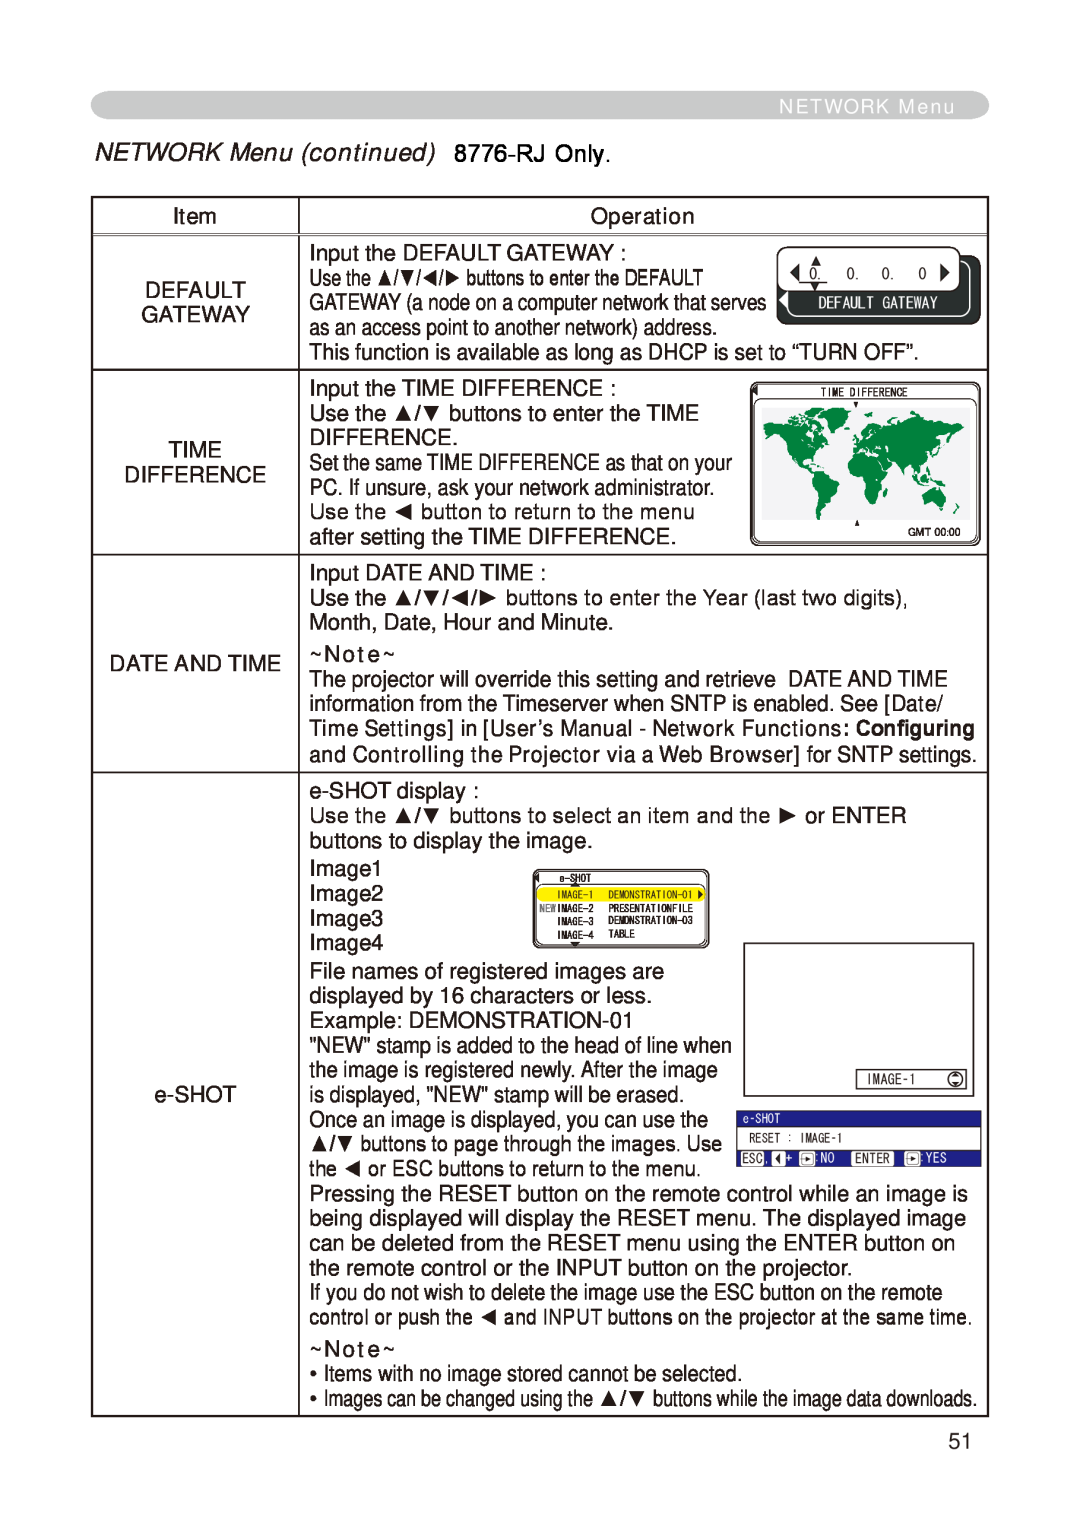 Dukane 8755E-RJ, 8776-RJ user manual NETWORK Menu continued, RJ Only 